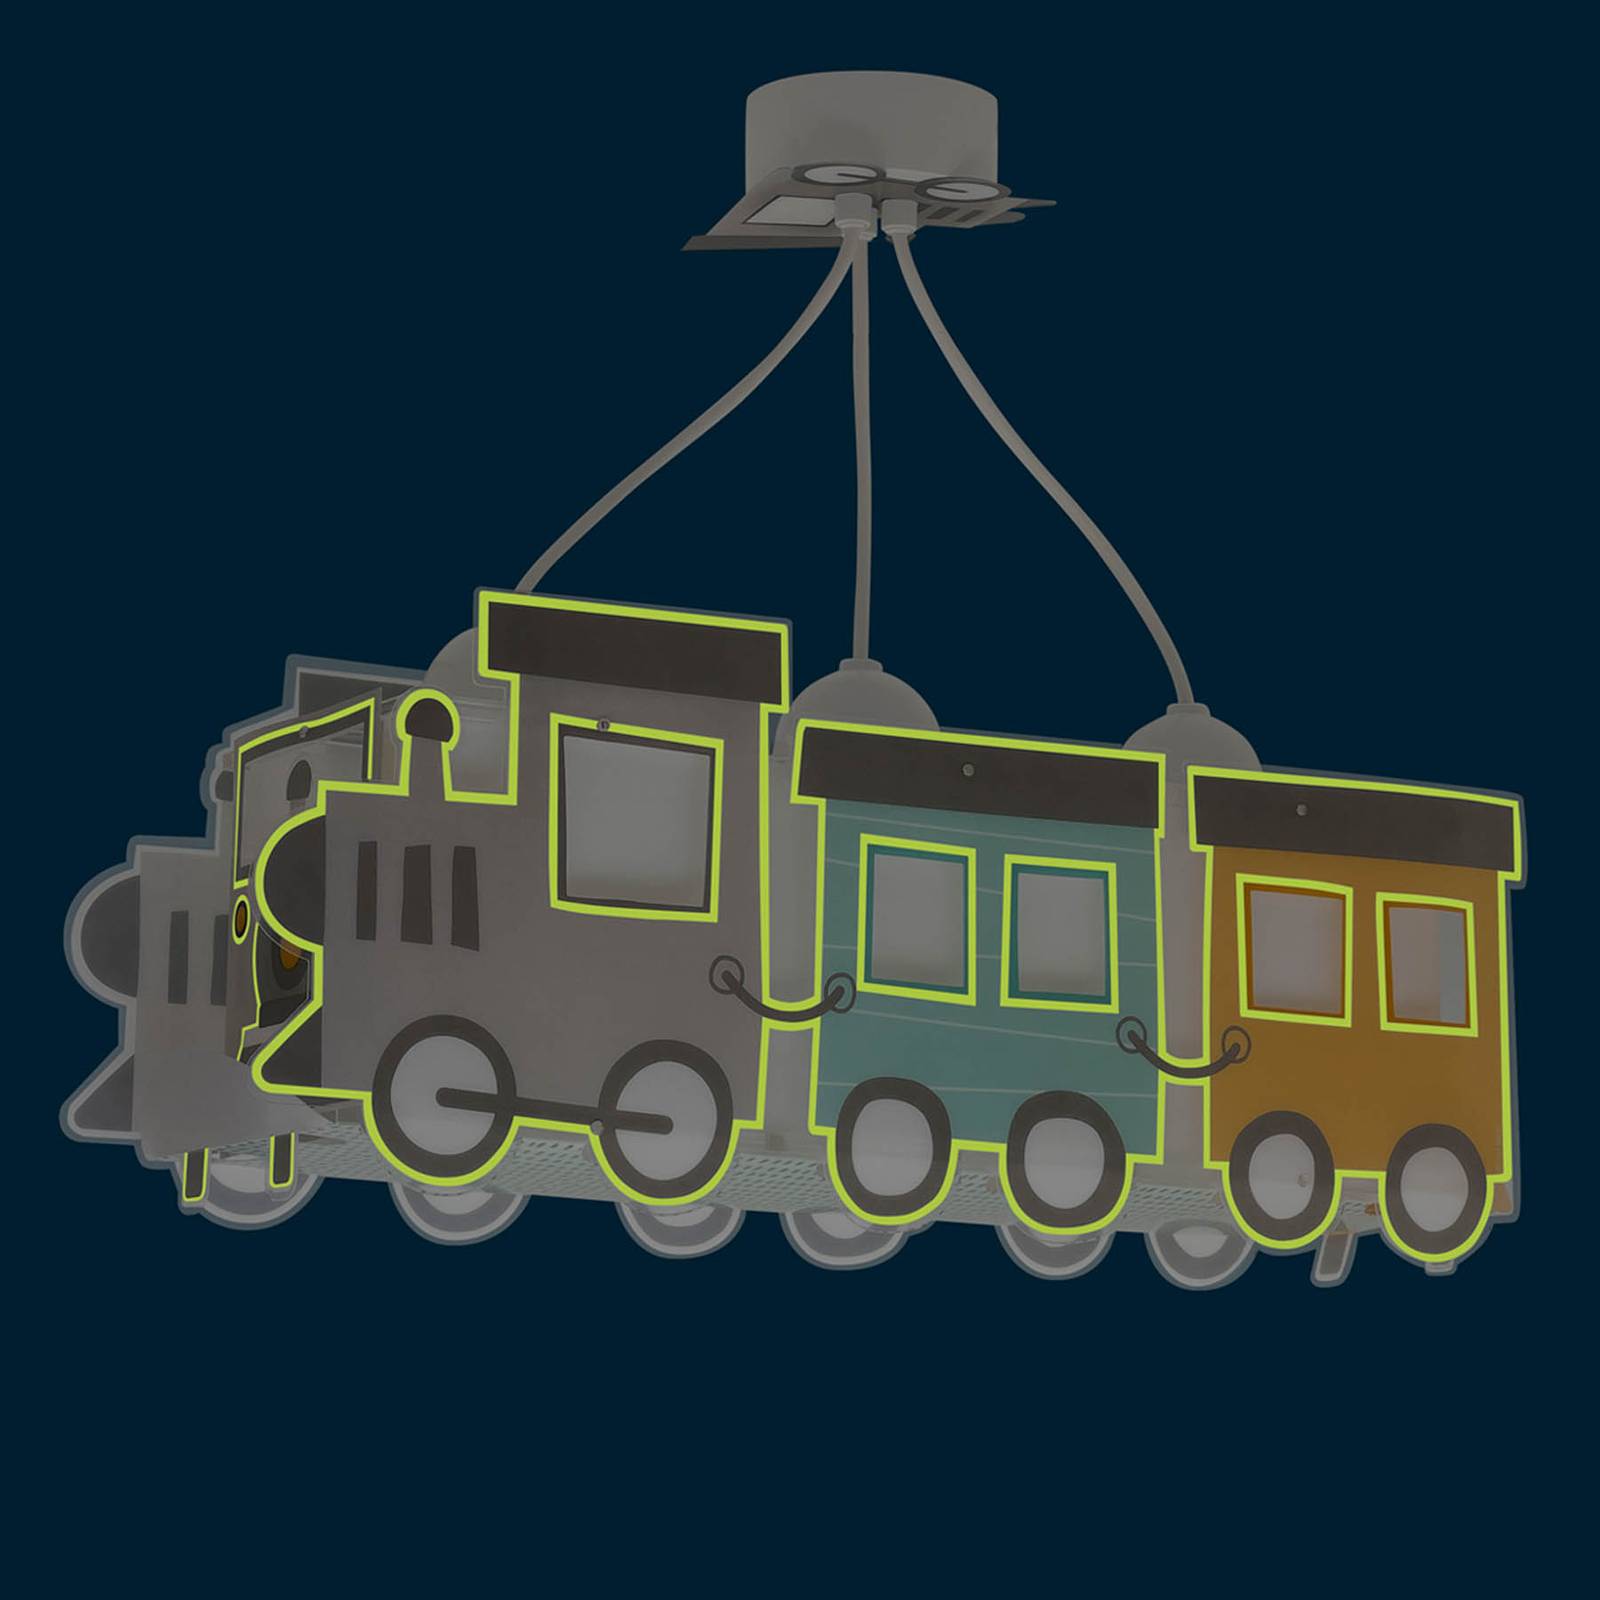 dalber night train suspension, locomotive